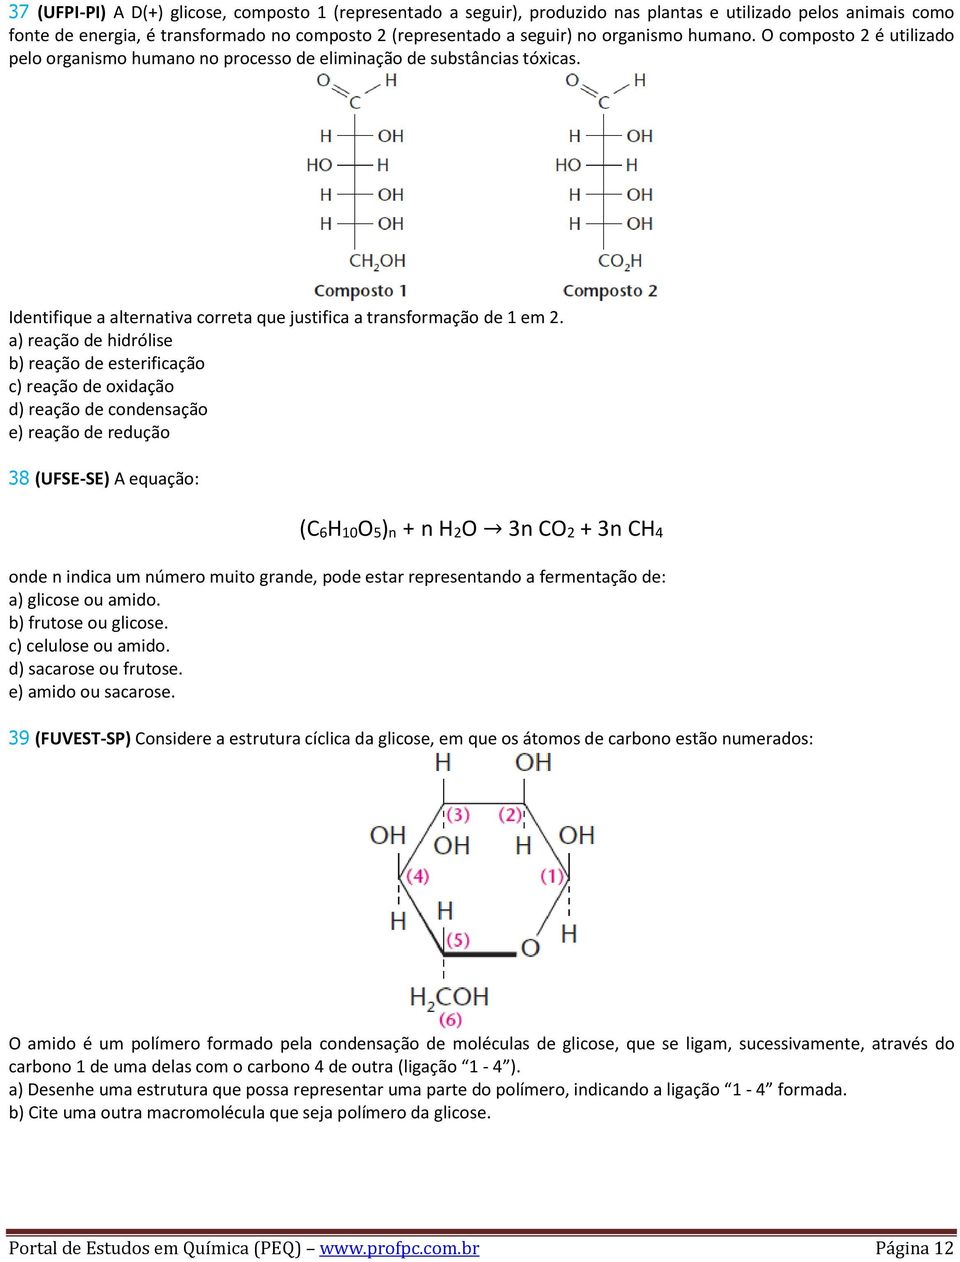 a) reação de hidrólise b) reação de esterificação c) reação de oxidação d) reação de condensação e) reação de redução 38 (UFSE-SE) A equação: (C6H10O5)n + n H2O 3n CO2 + 3n CH4 onde n indica um